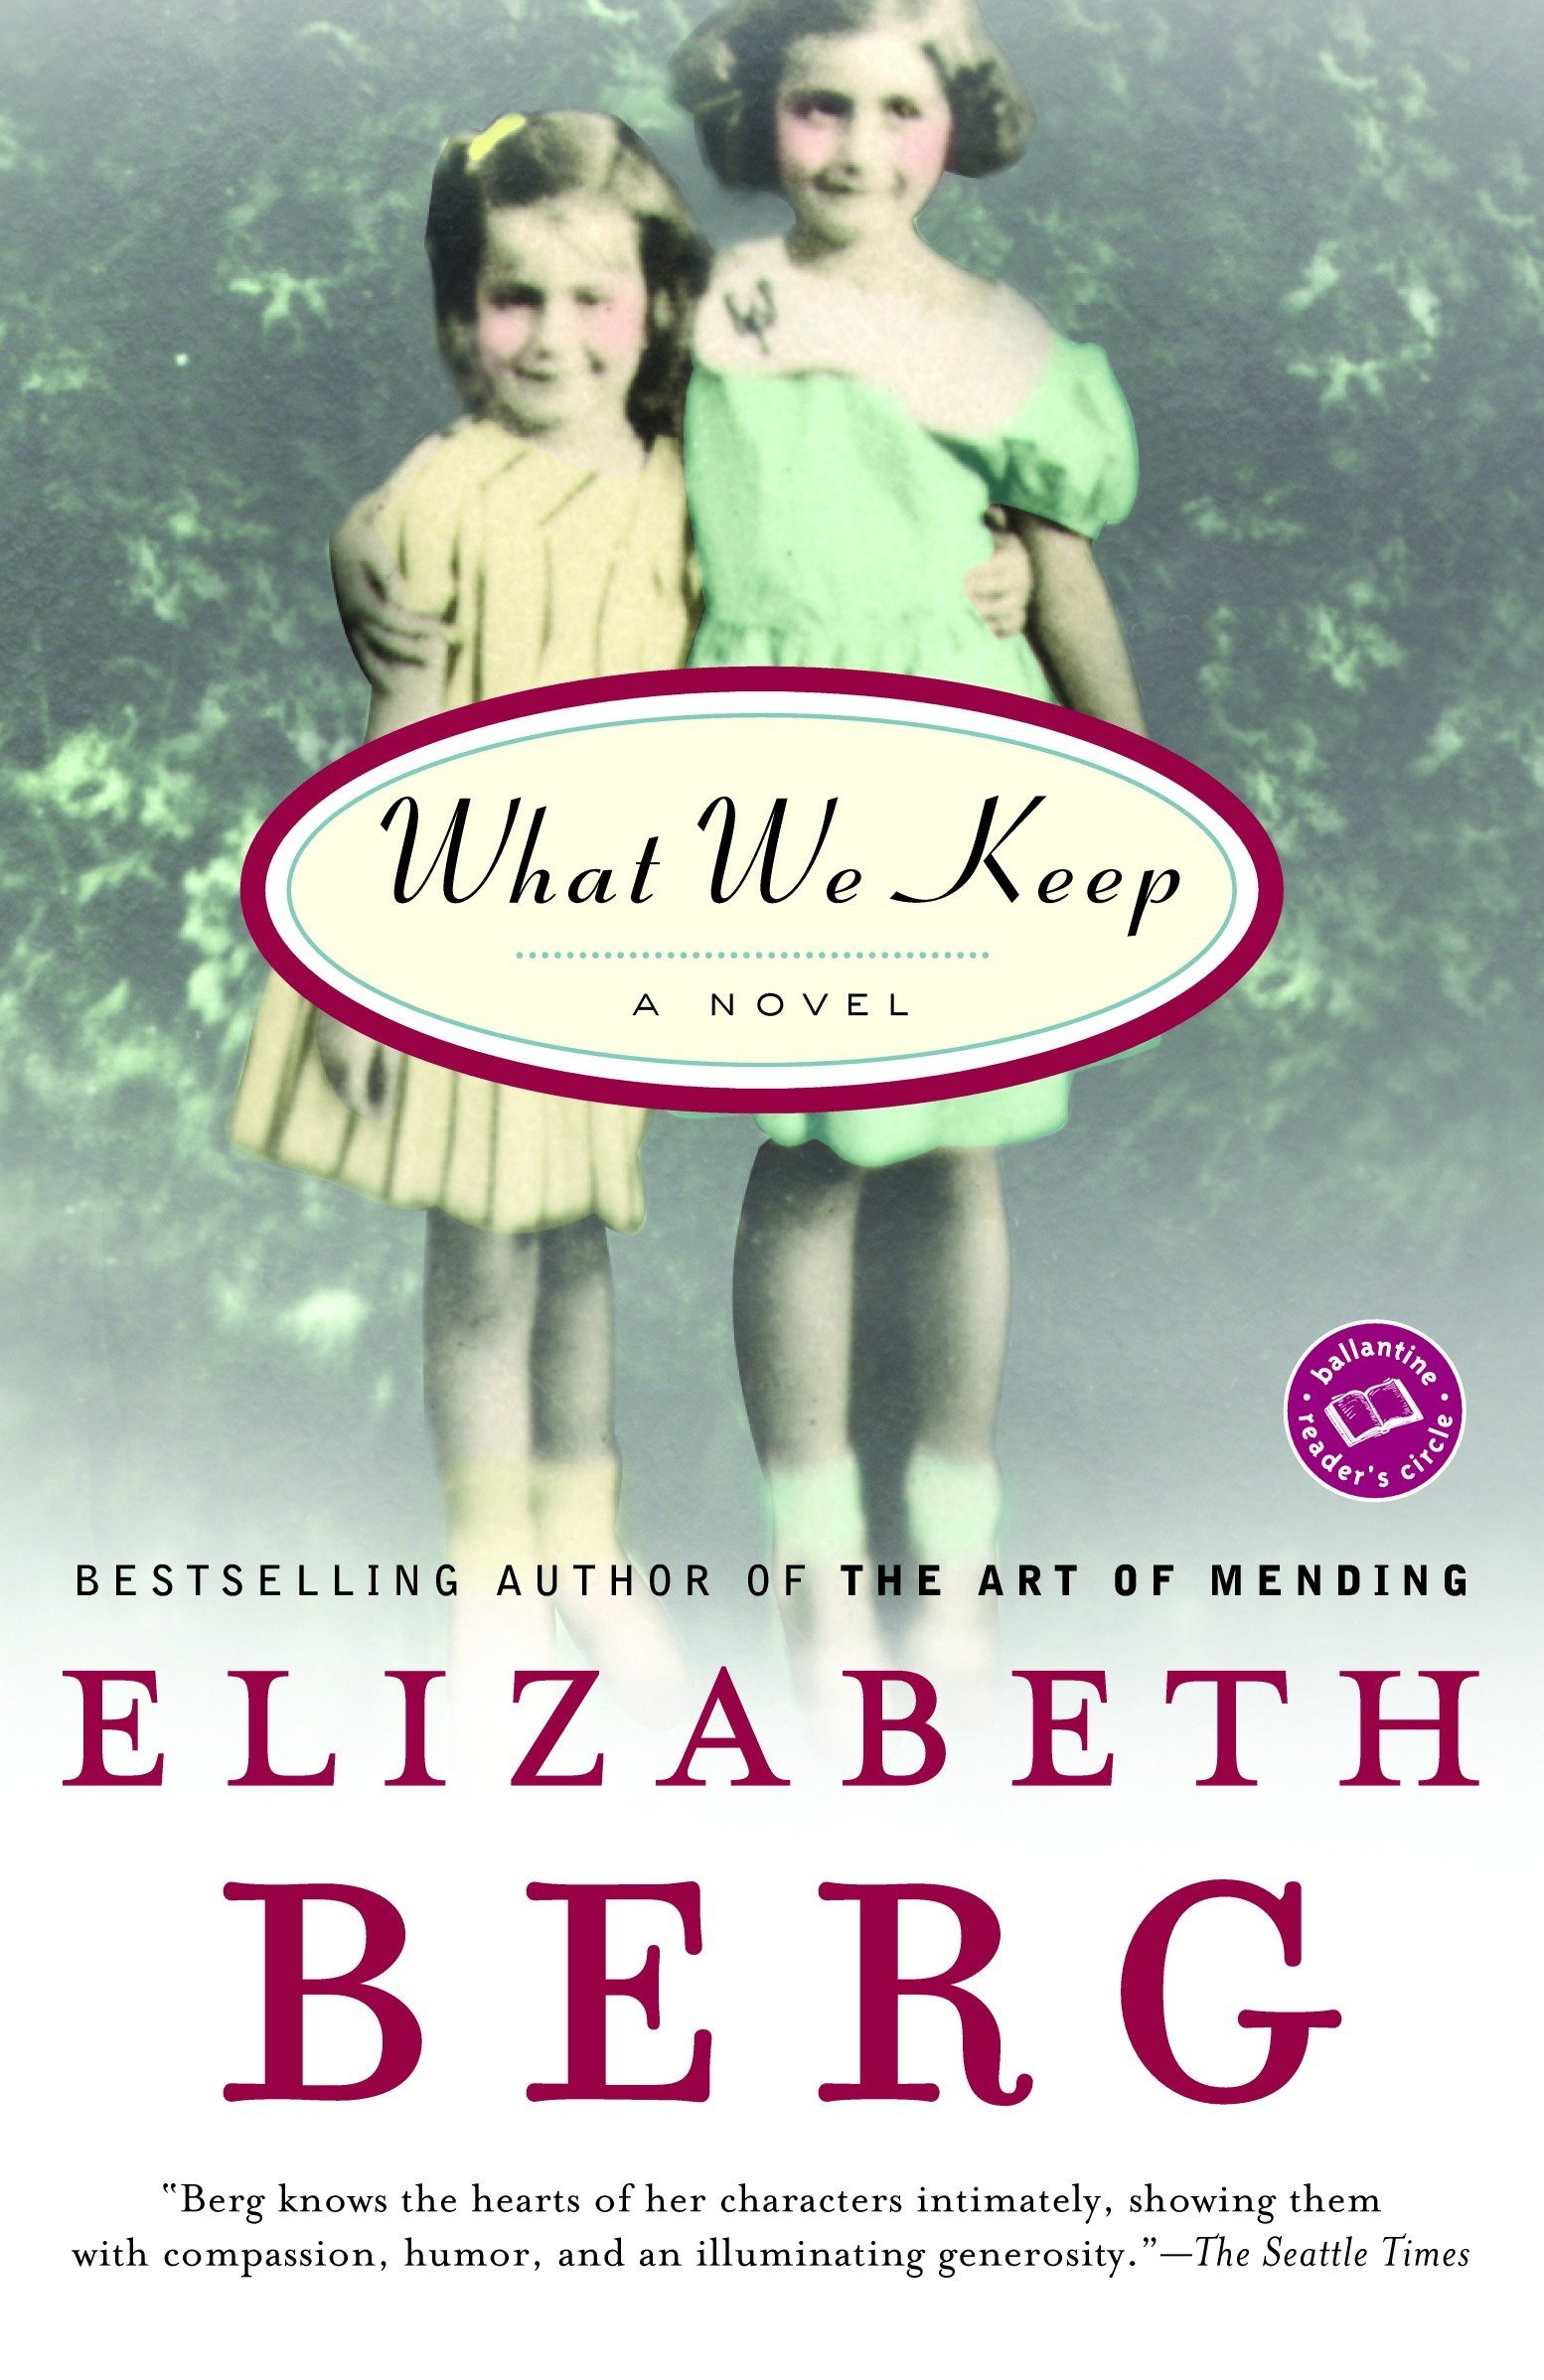 What We Keep by Elizabeth Berg.